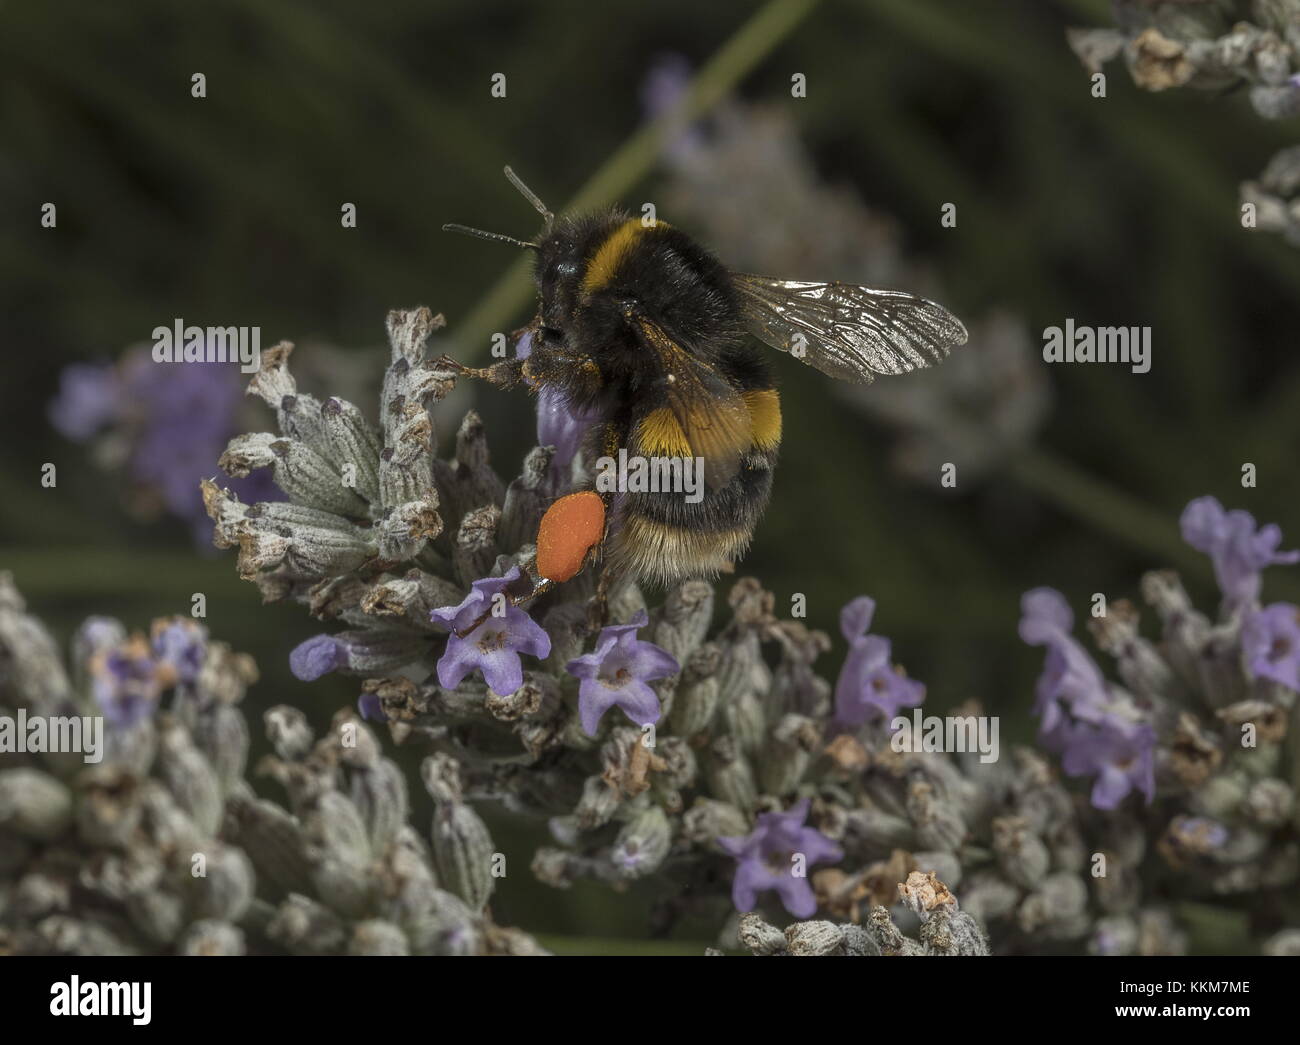 Trabajador buff-tailed abejorros Bombus terrestris, completa, con encantadoras cestas de polen, de lavanda. Foto de stock